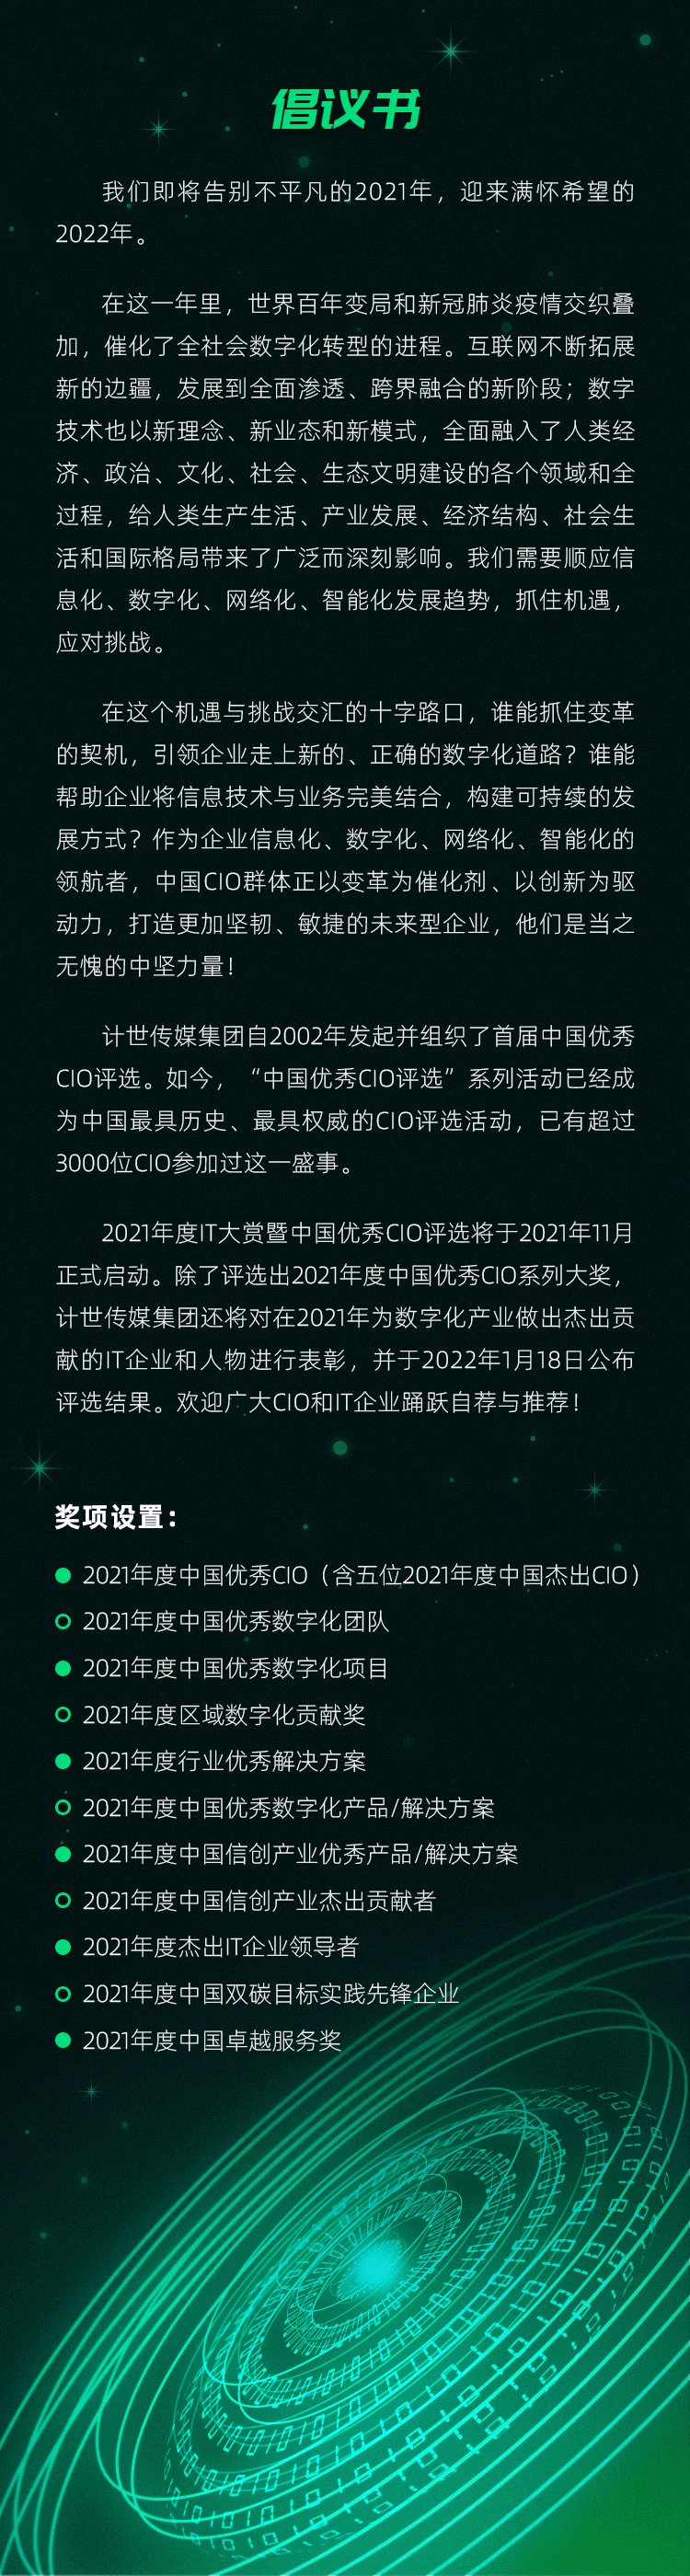 纵深数字化新征程 2021年度IT大赏暨中国优秀CIO评选启动